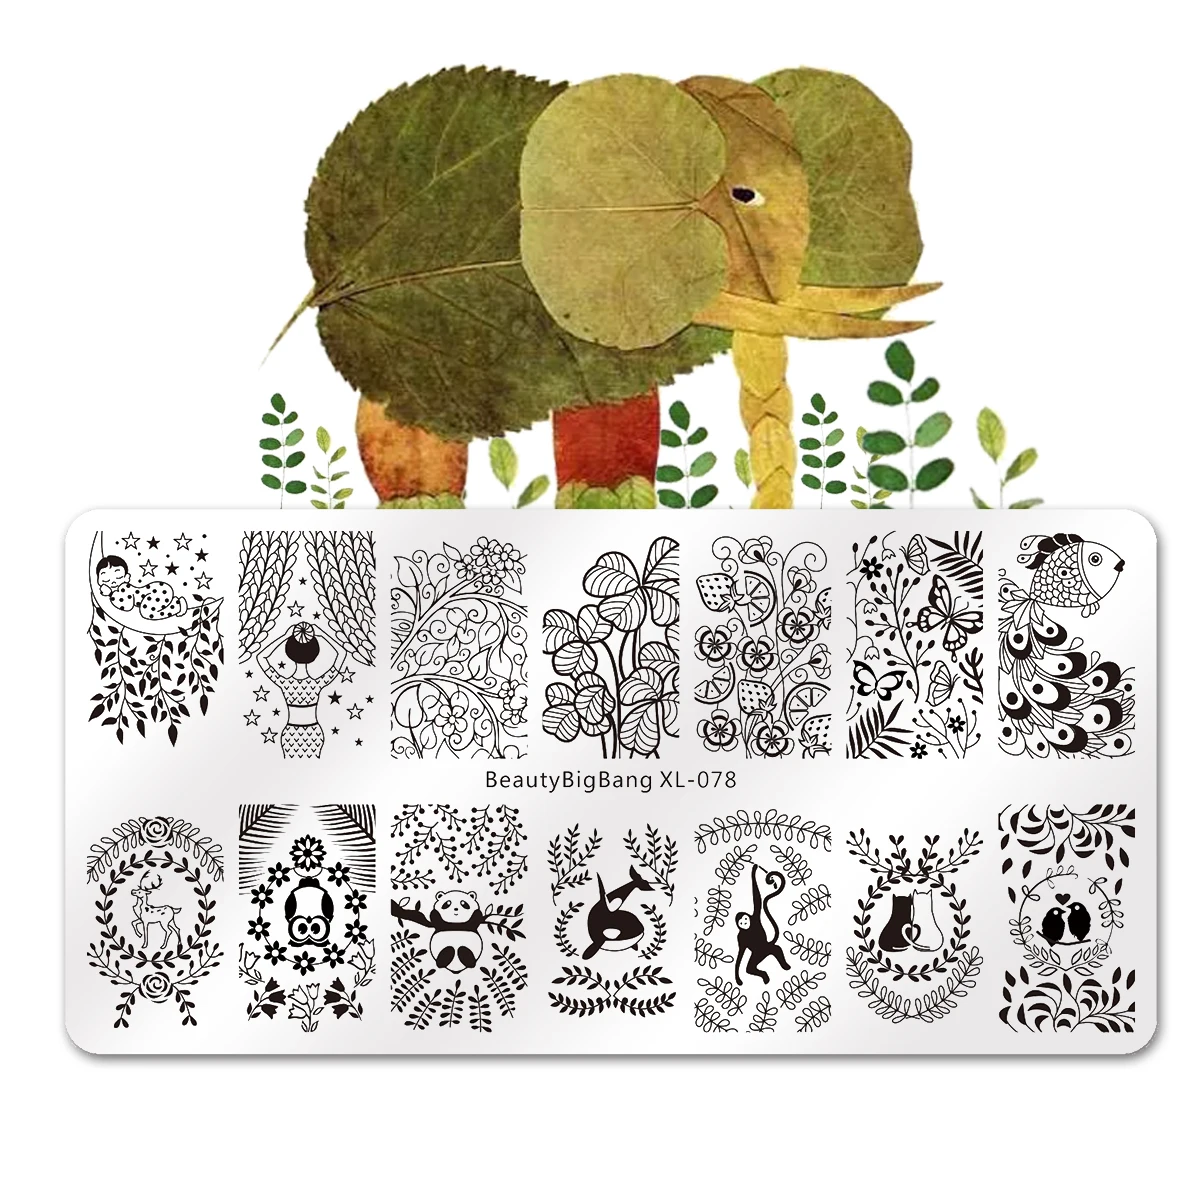 BEAUTYBIGBANG прямоугольные пластины для штамповки ногтей шаблон для ногтей лоза лист слон тема животное штамп дизайн ногтей штамп шаблон изображения - Цвет: 703556408527